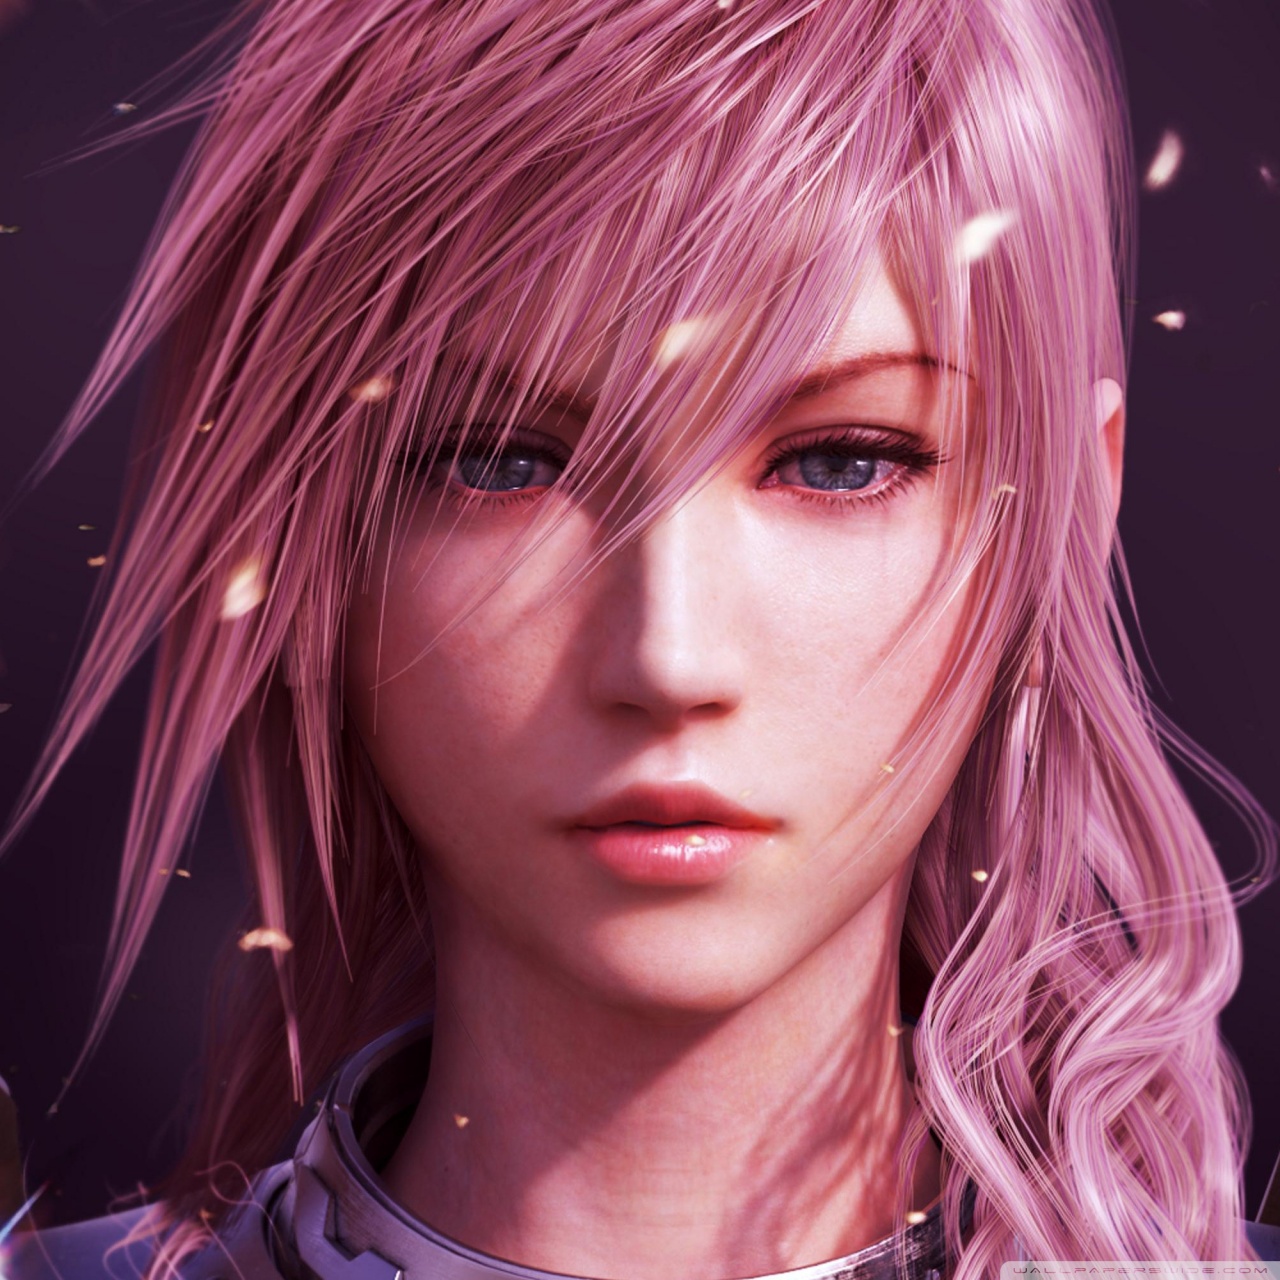 Final Fantasy XIII Lightning 4K HD Desktop Wallpaper For 4K